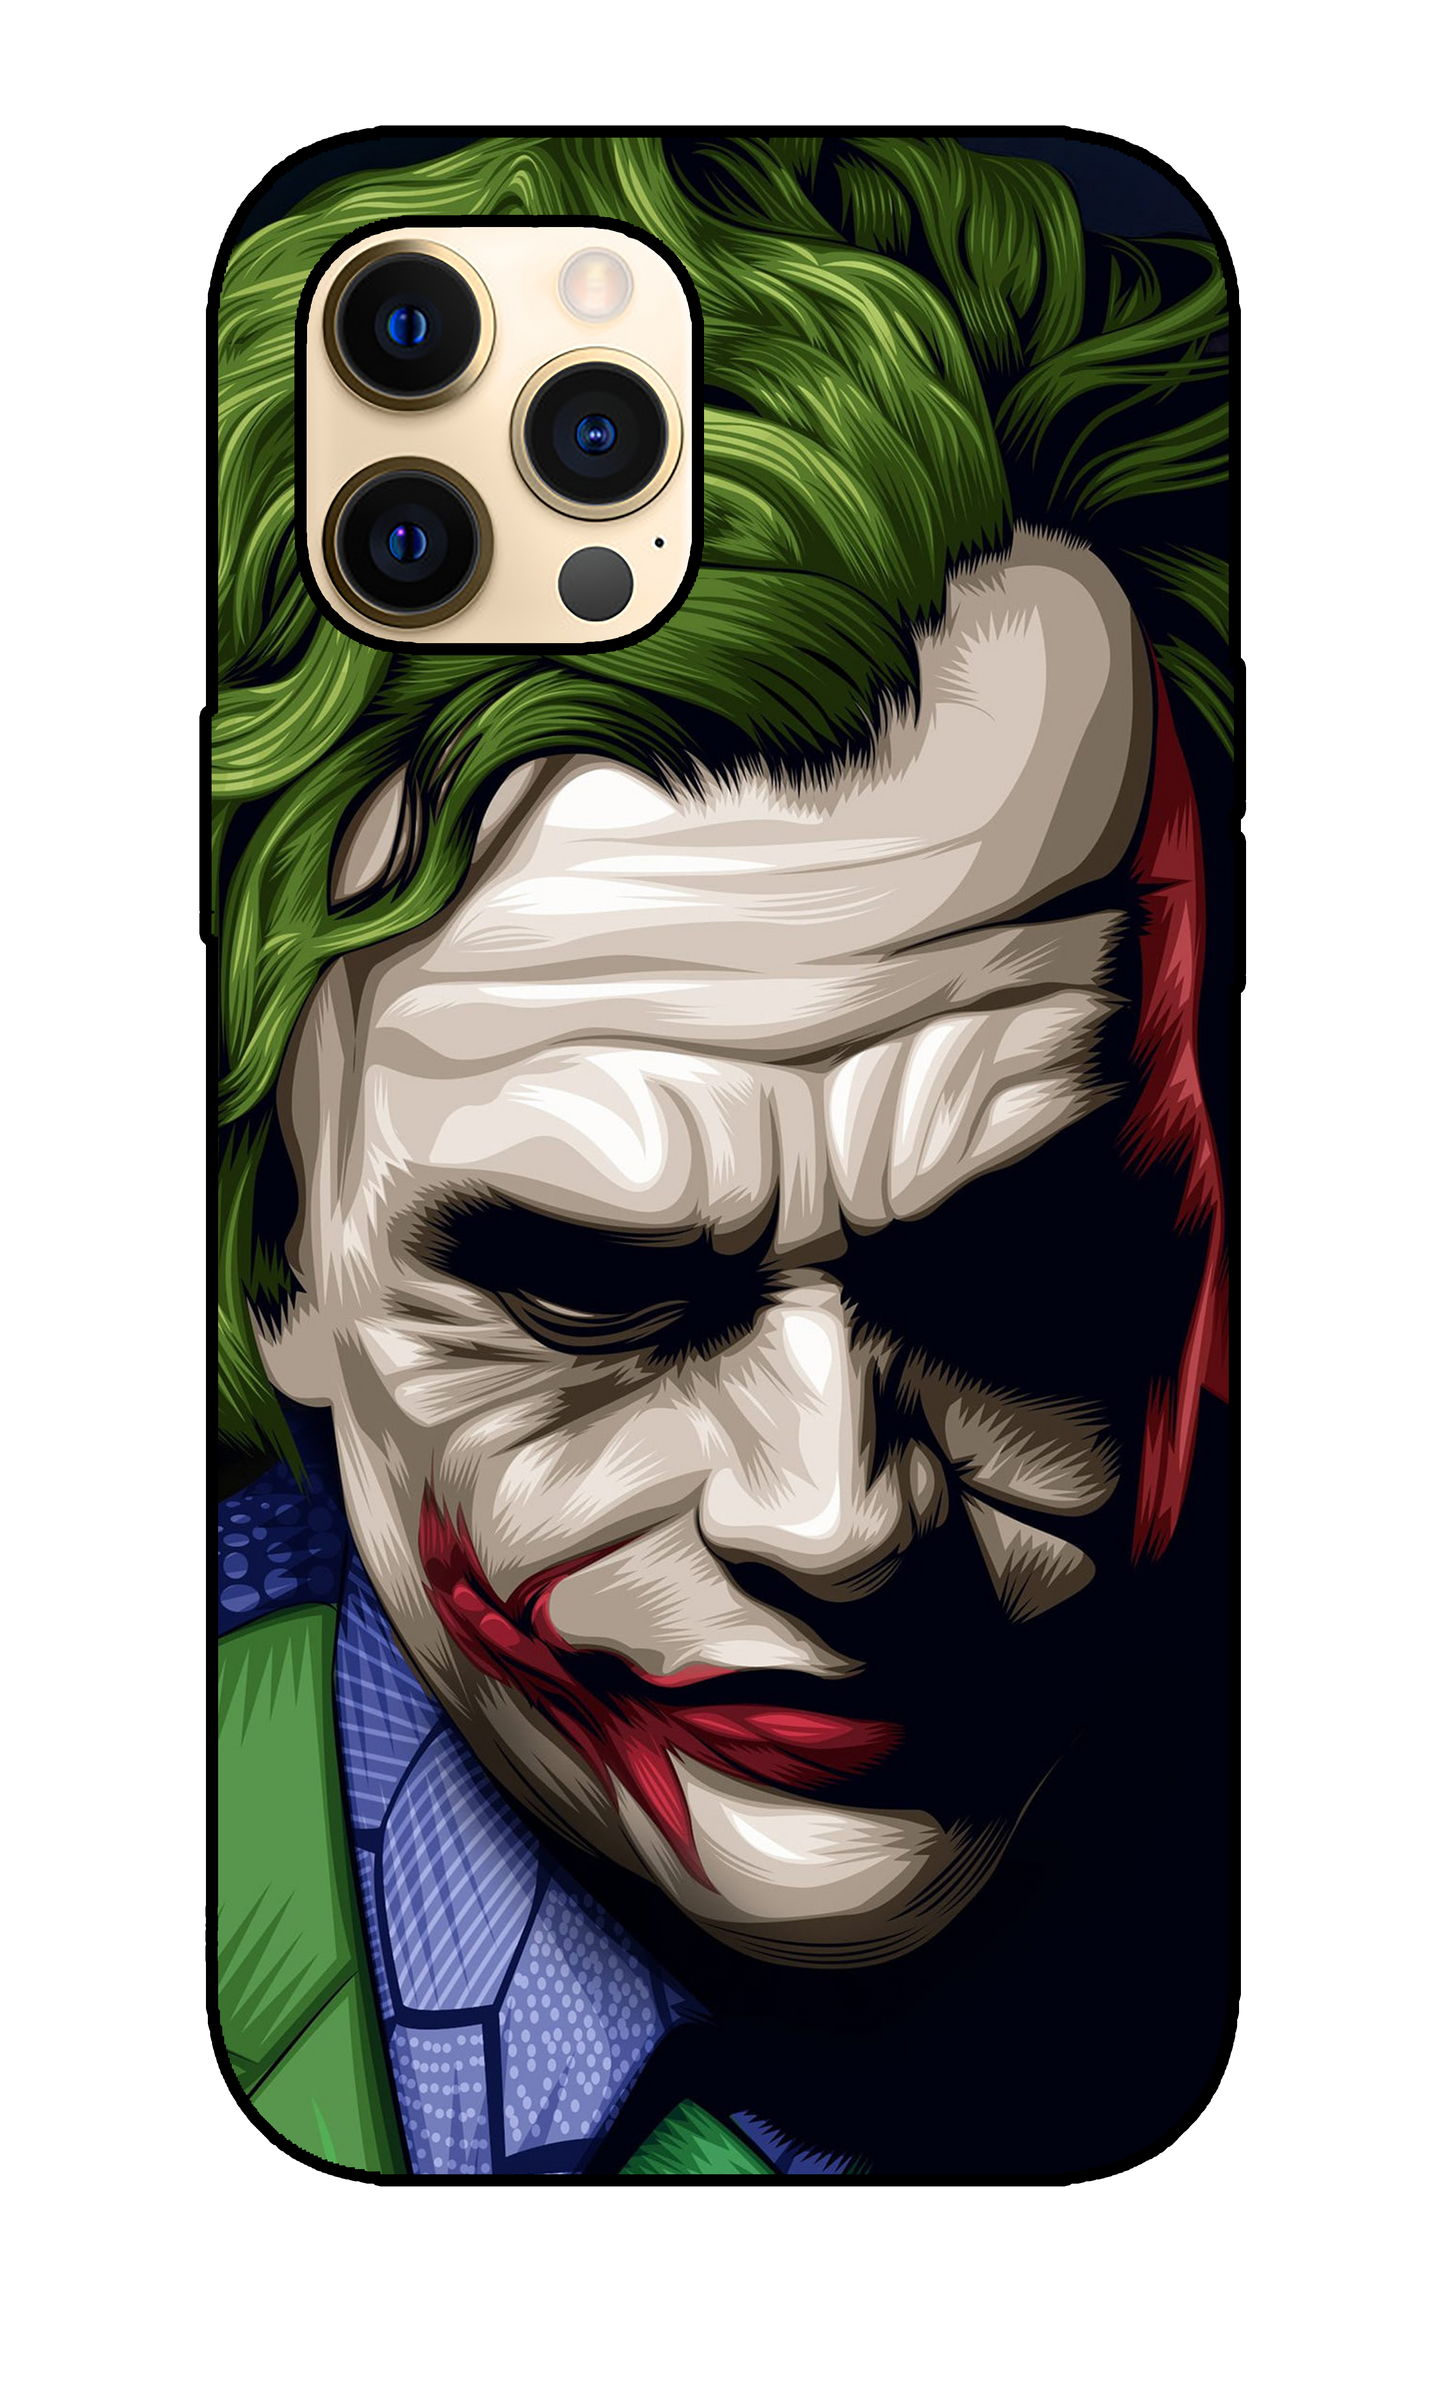 Joker case 4